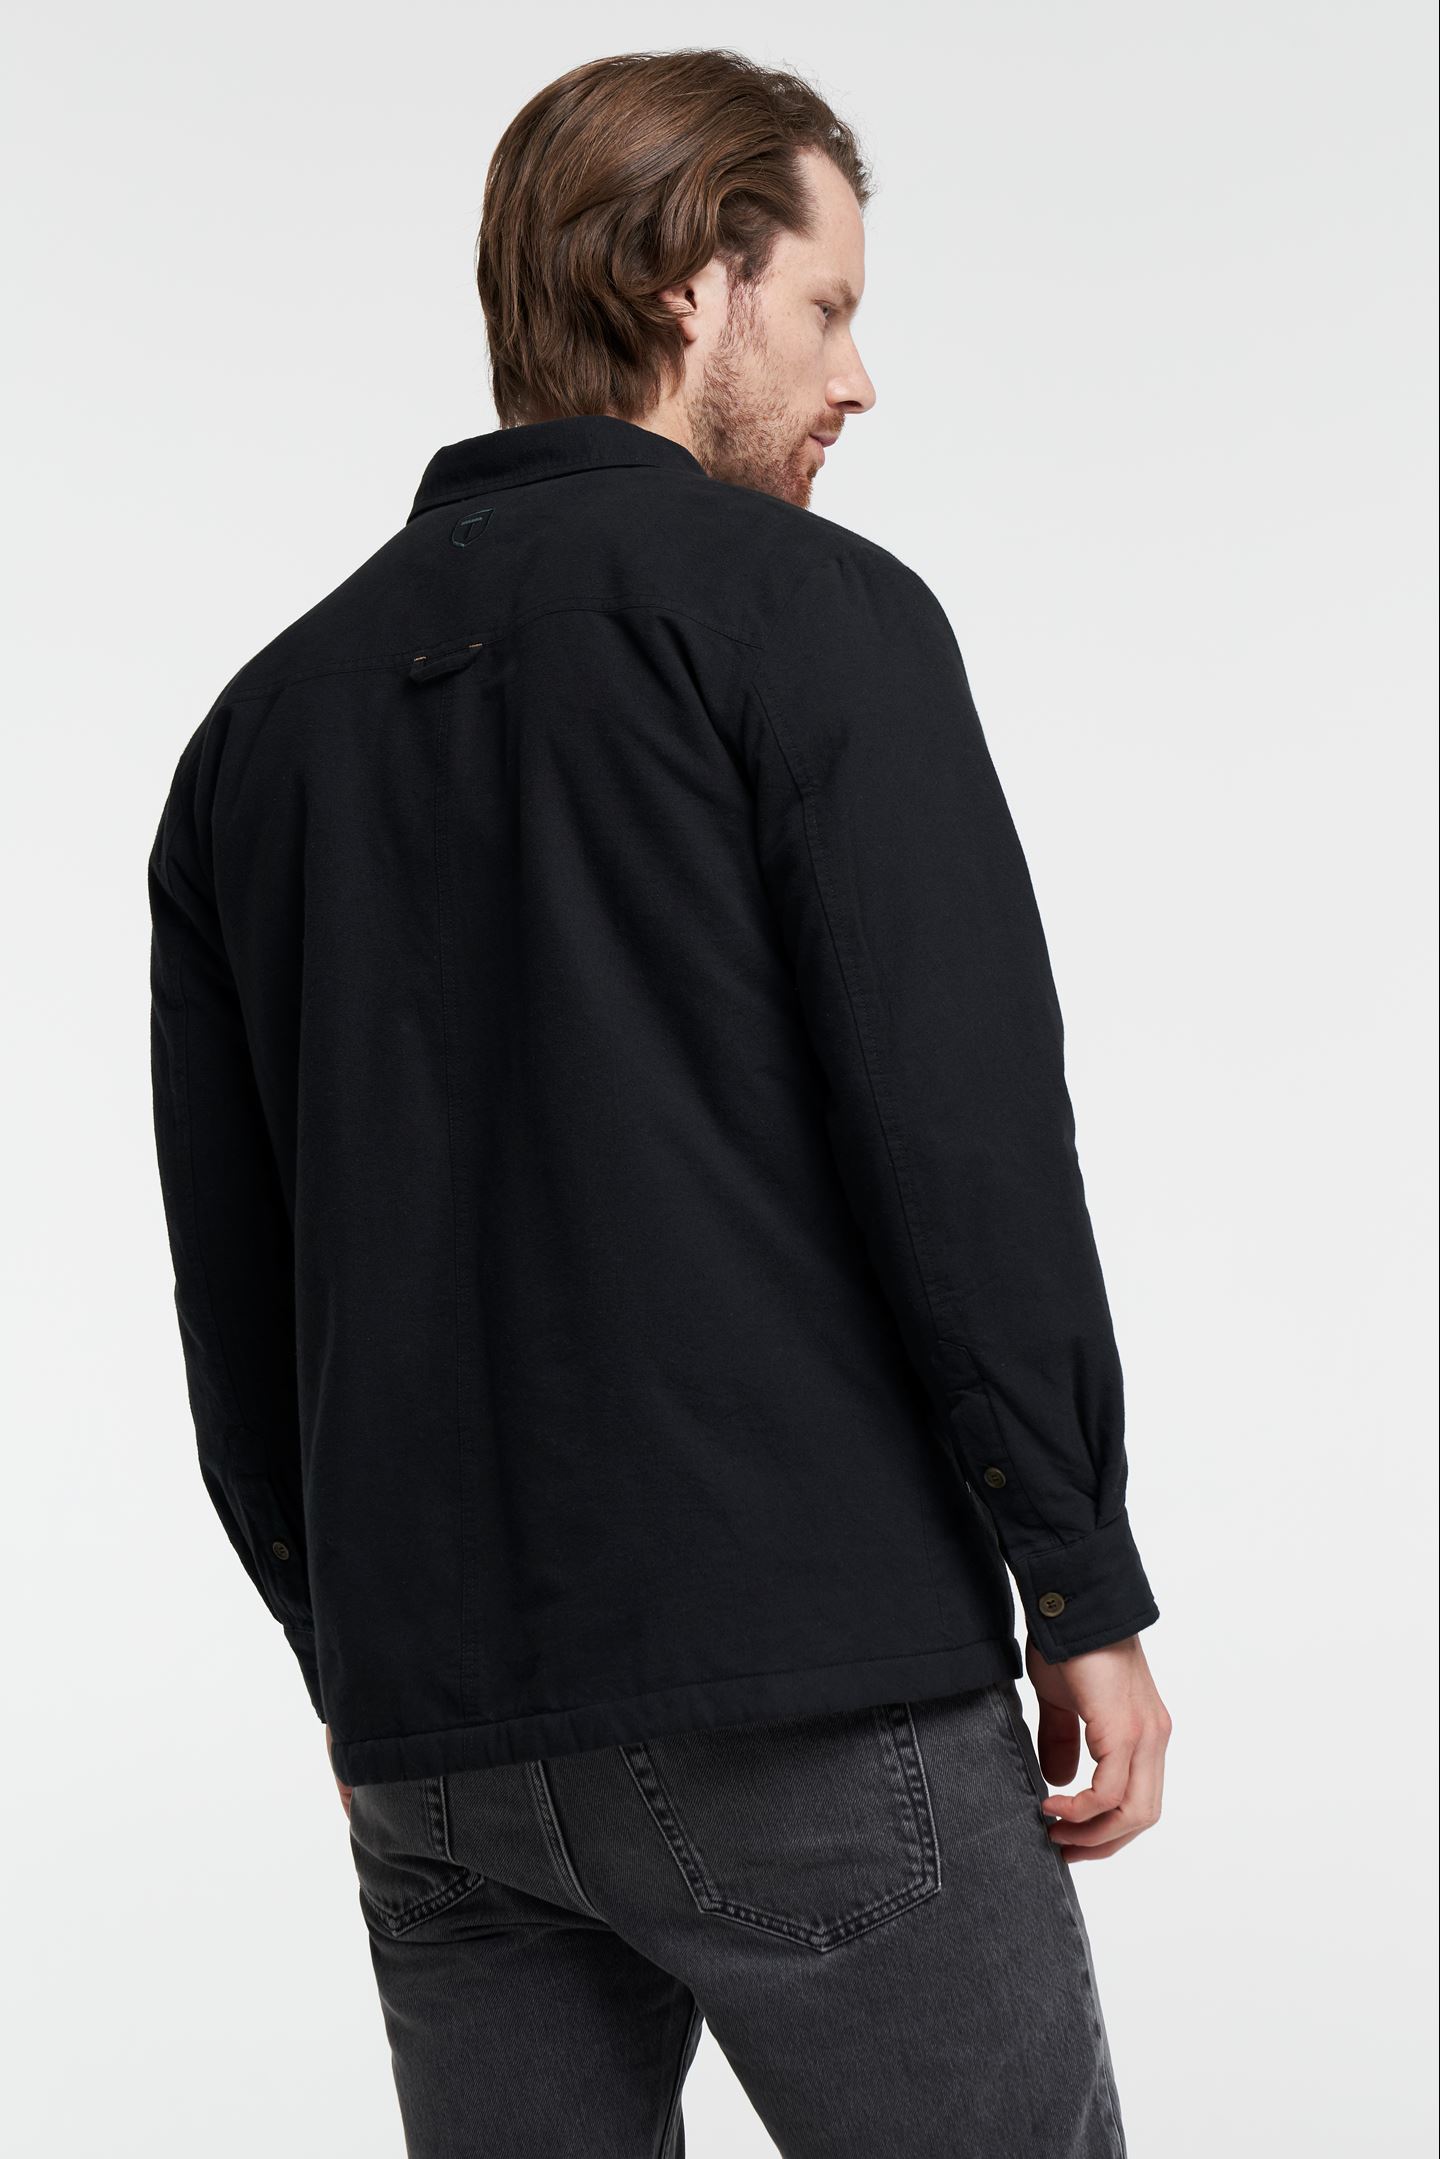 Cargo Jacket Black Overshirt - - Lined Shirt